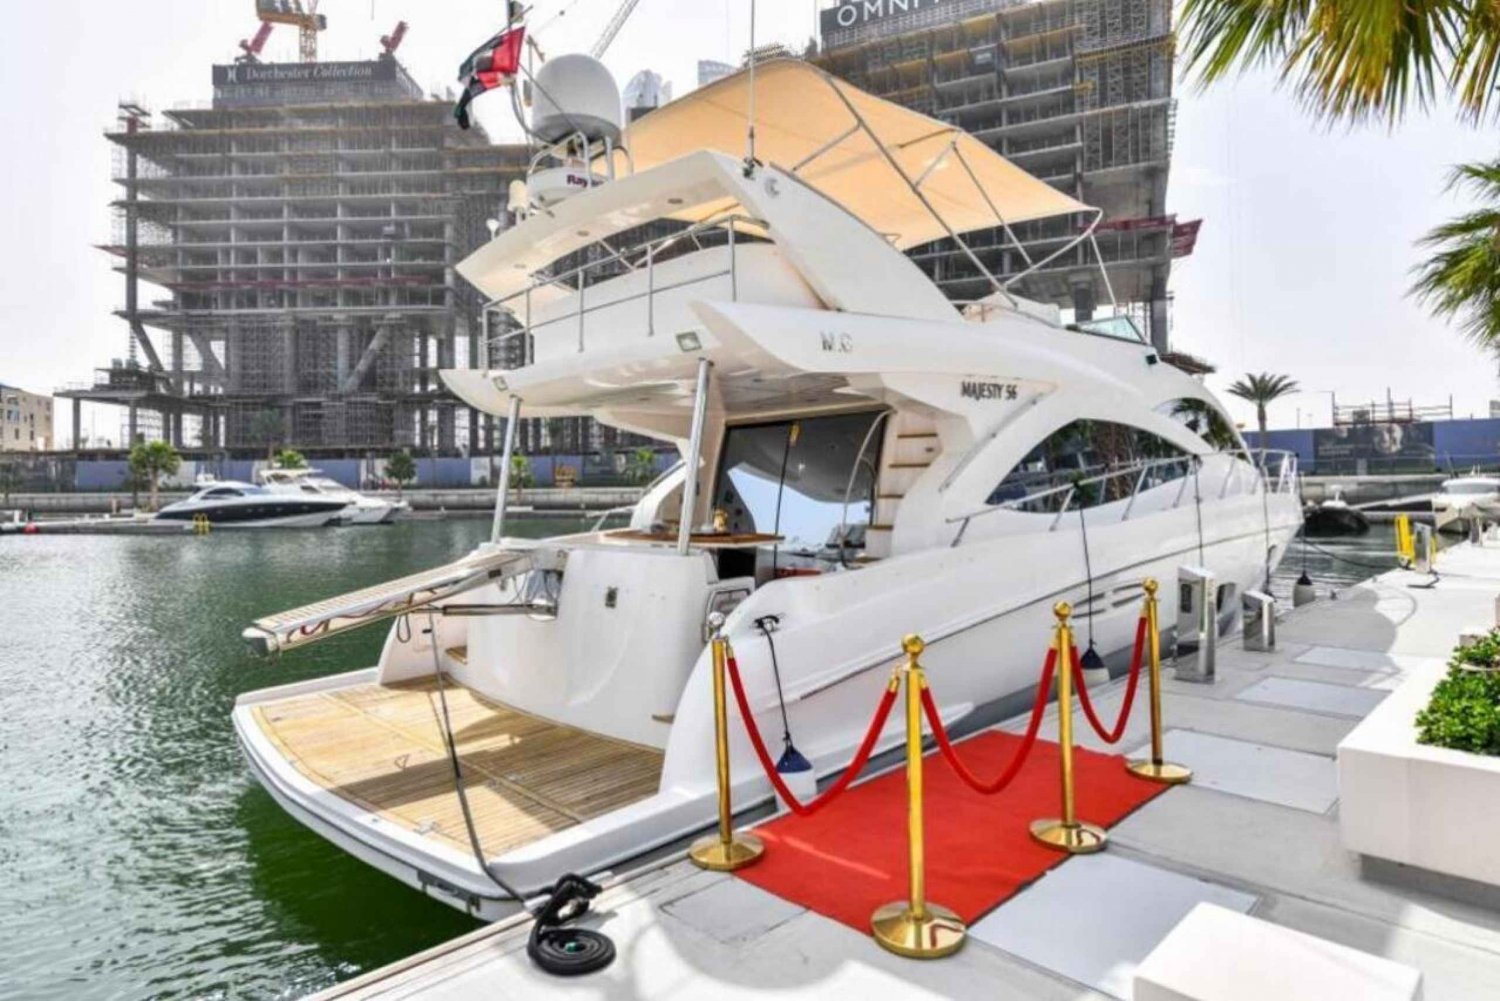 Dubai: Privat lyxjakttur i marinan